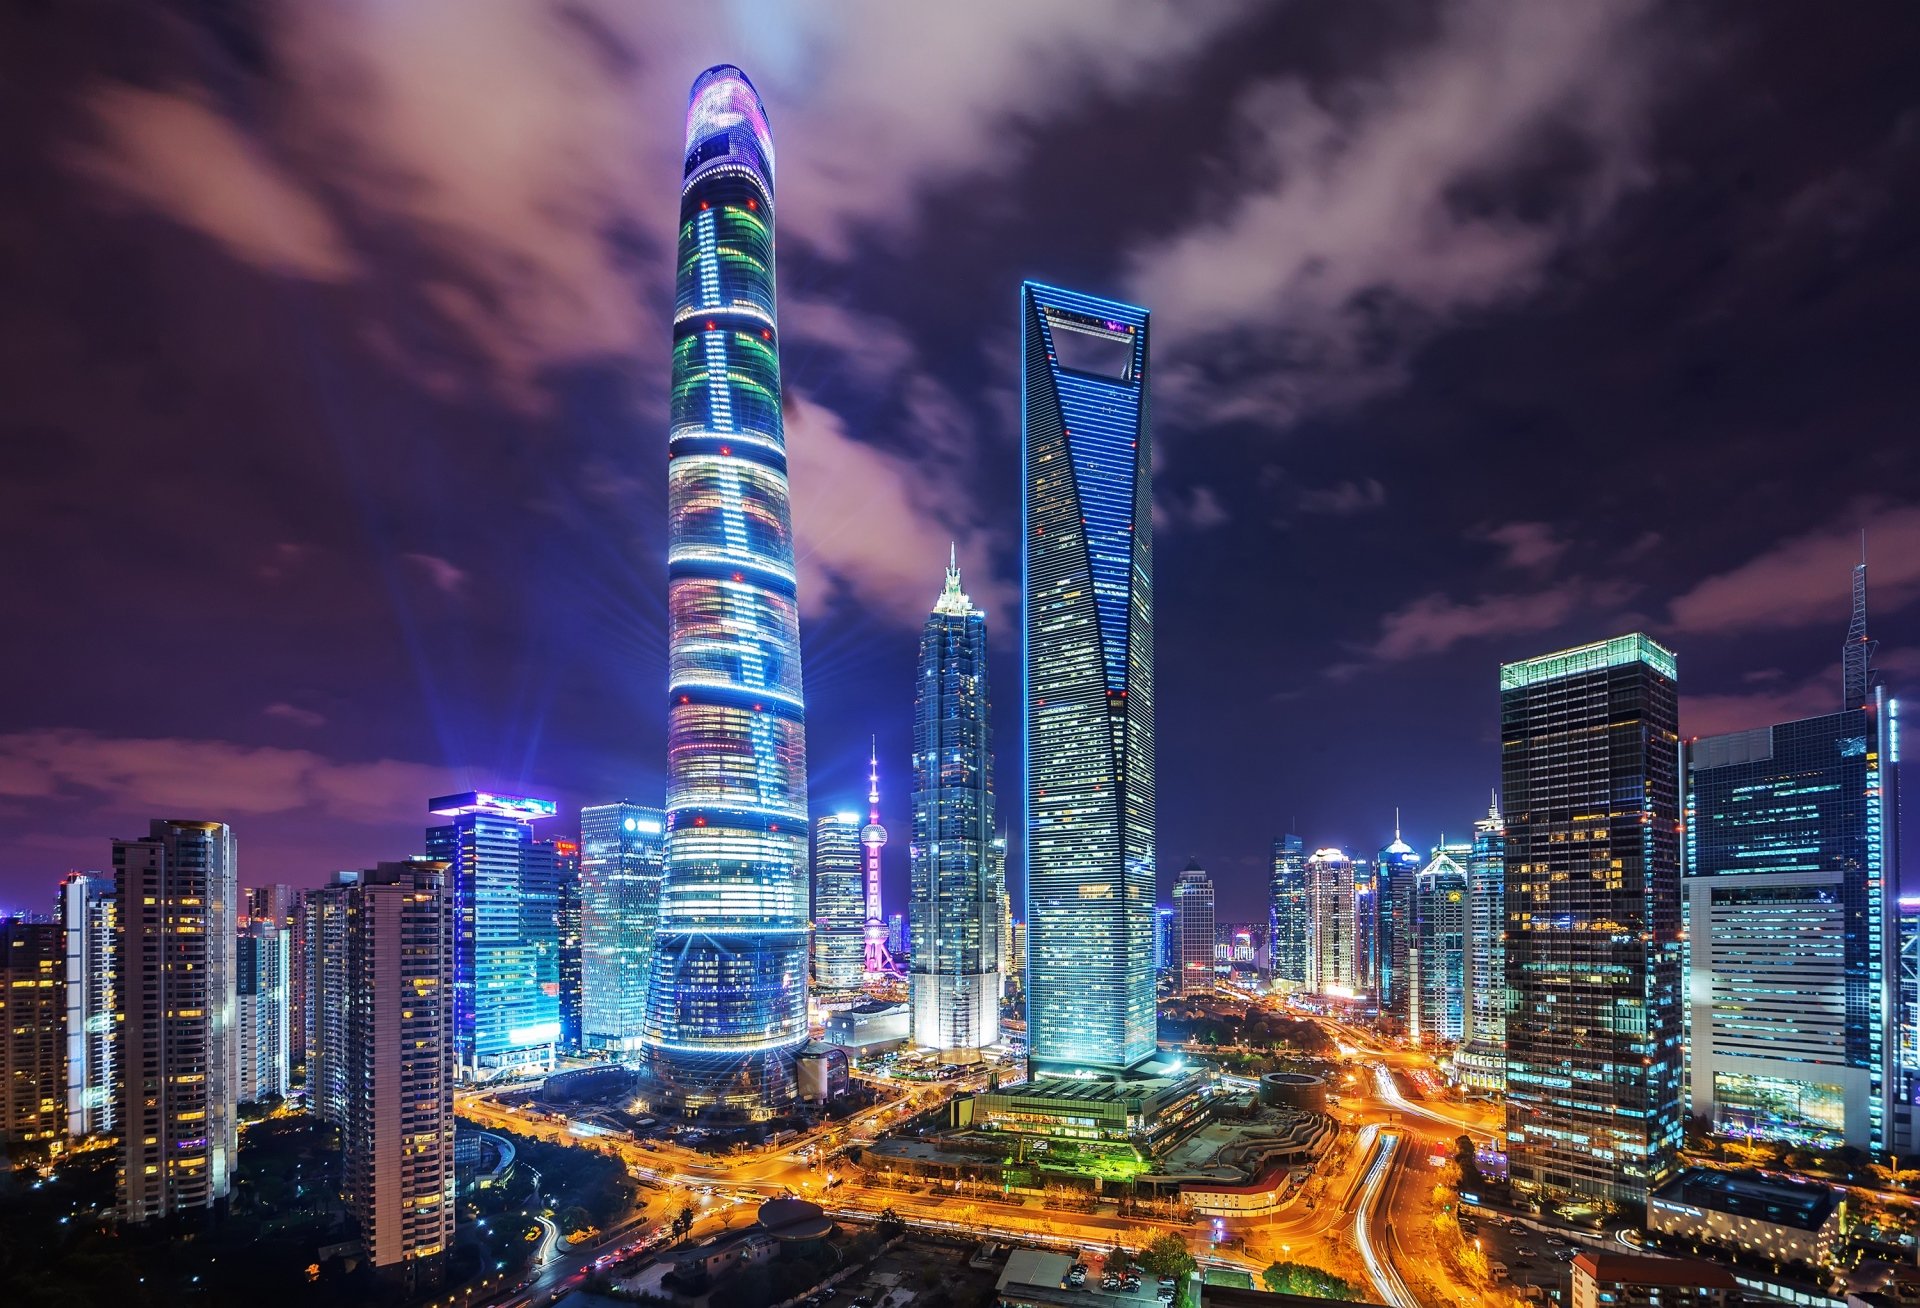 Tòa nhà cao nhất Trung Quốc: Thiết kế phức tạp, hơn 100 thang máy siêu tốc - Ảnh 8.